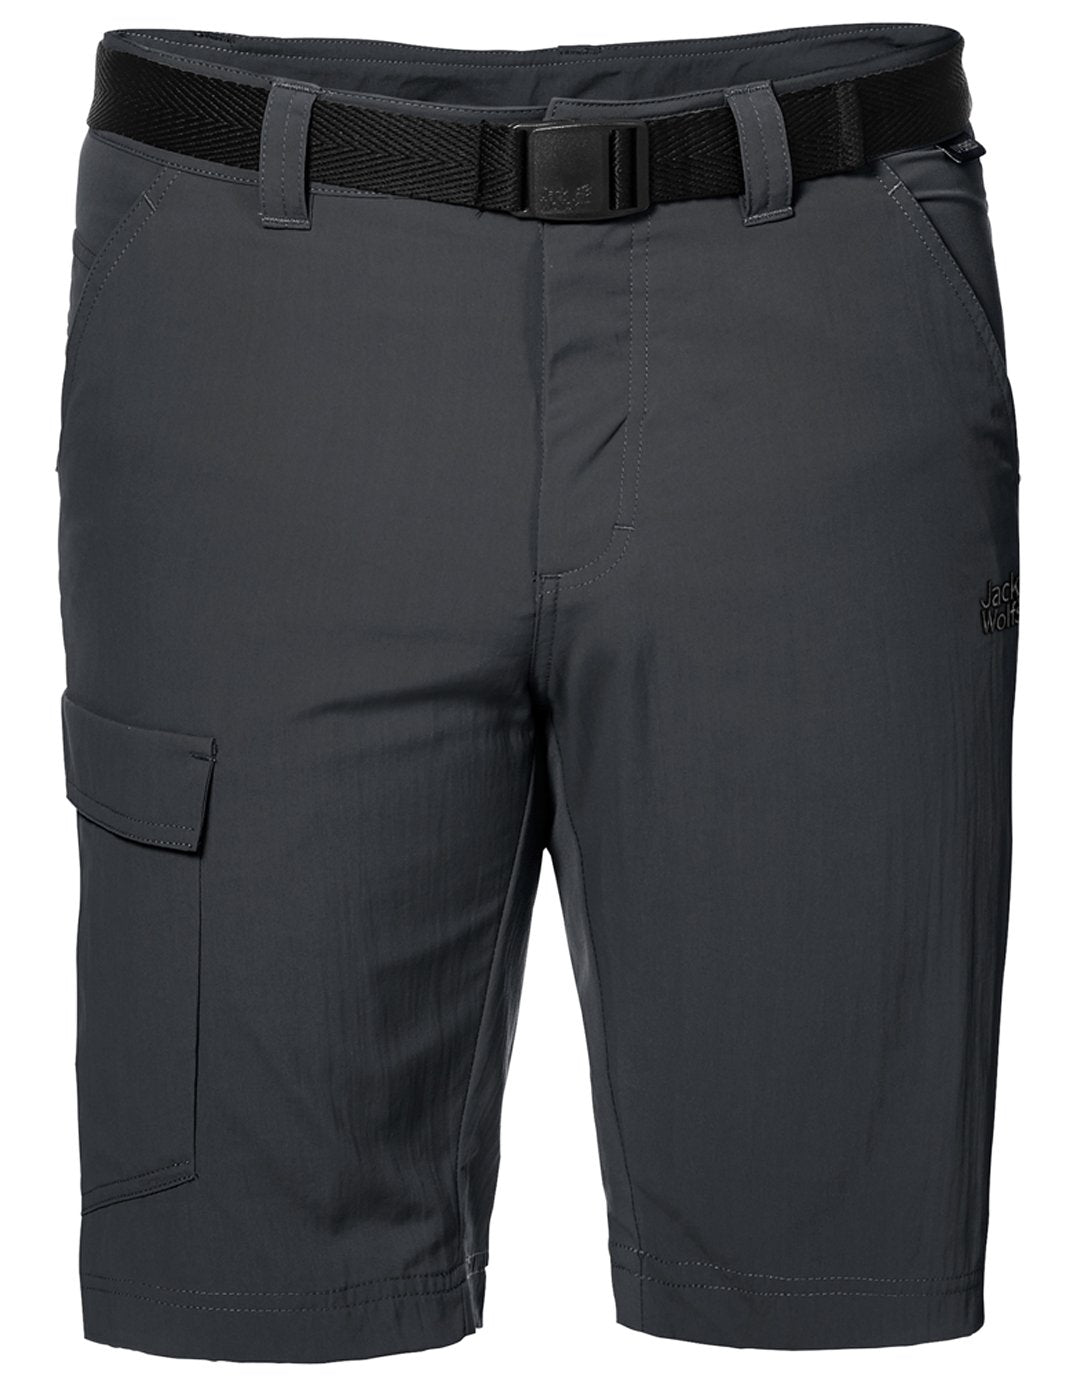 Mens Hoggar Shorts - Phantom - UK Size 32 Grey